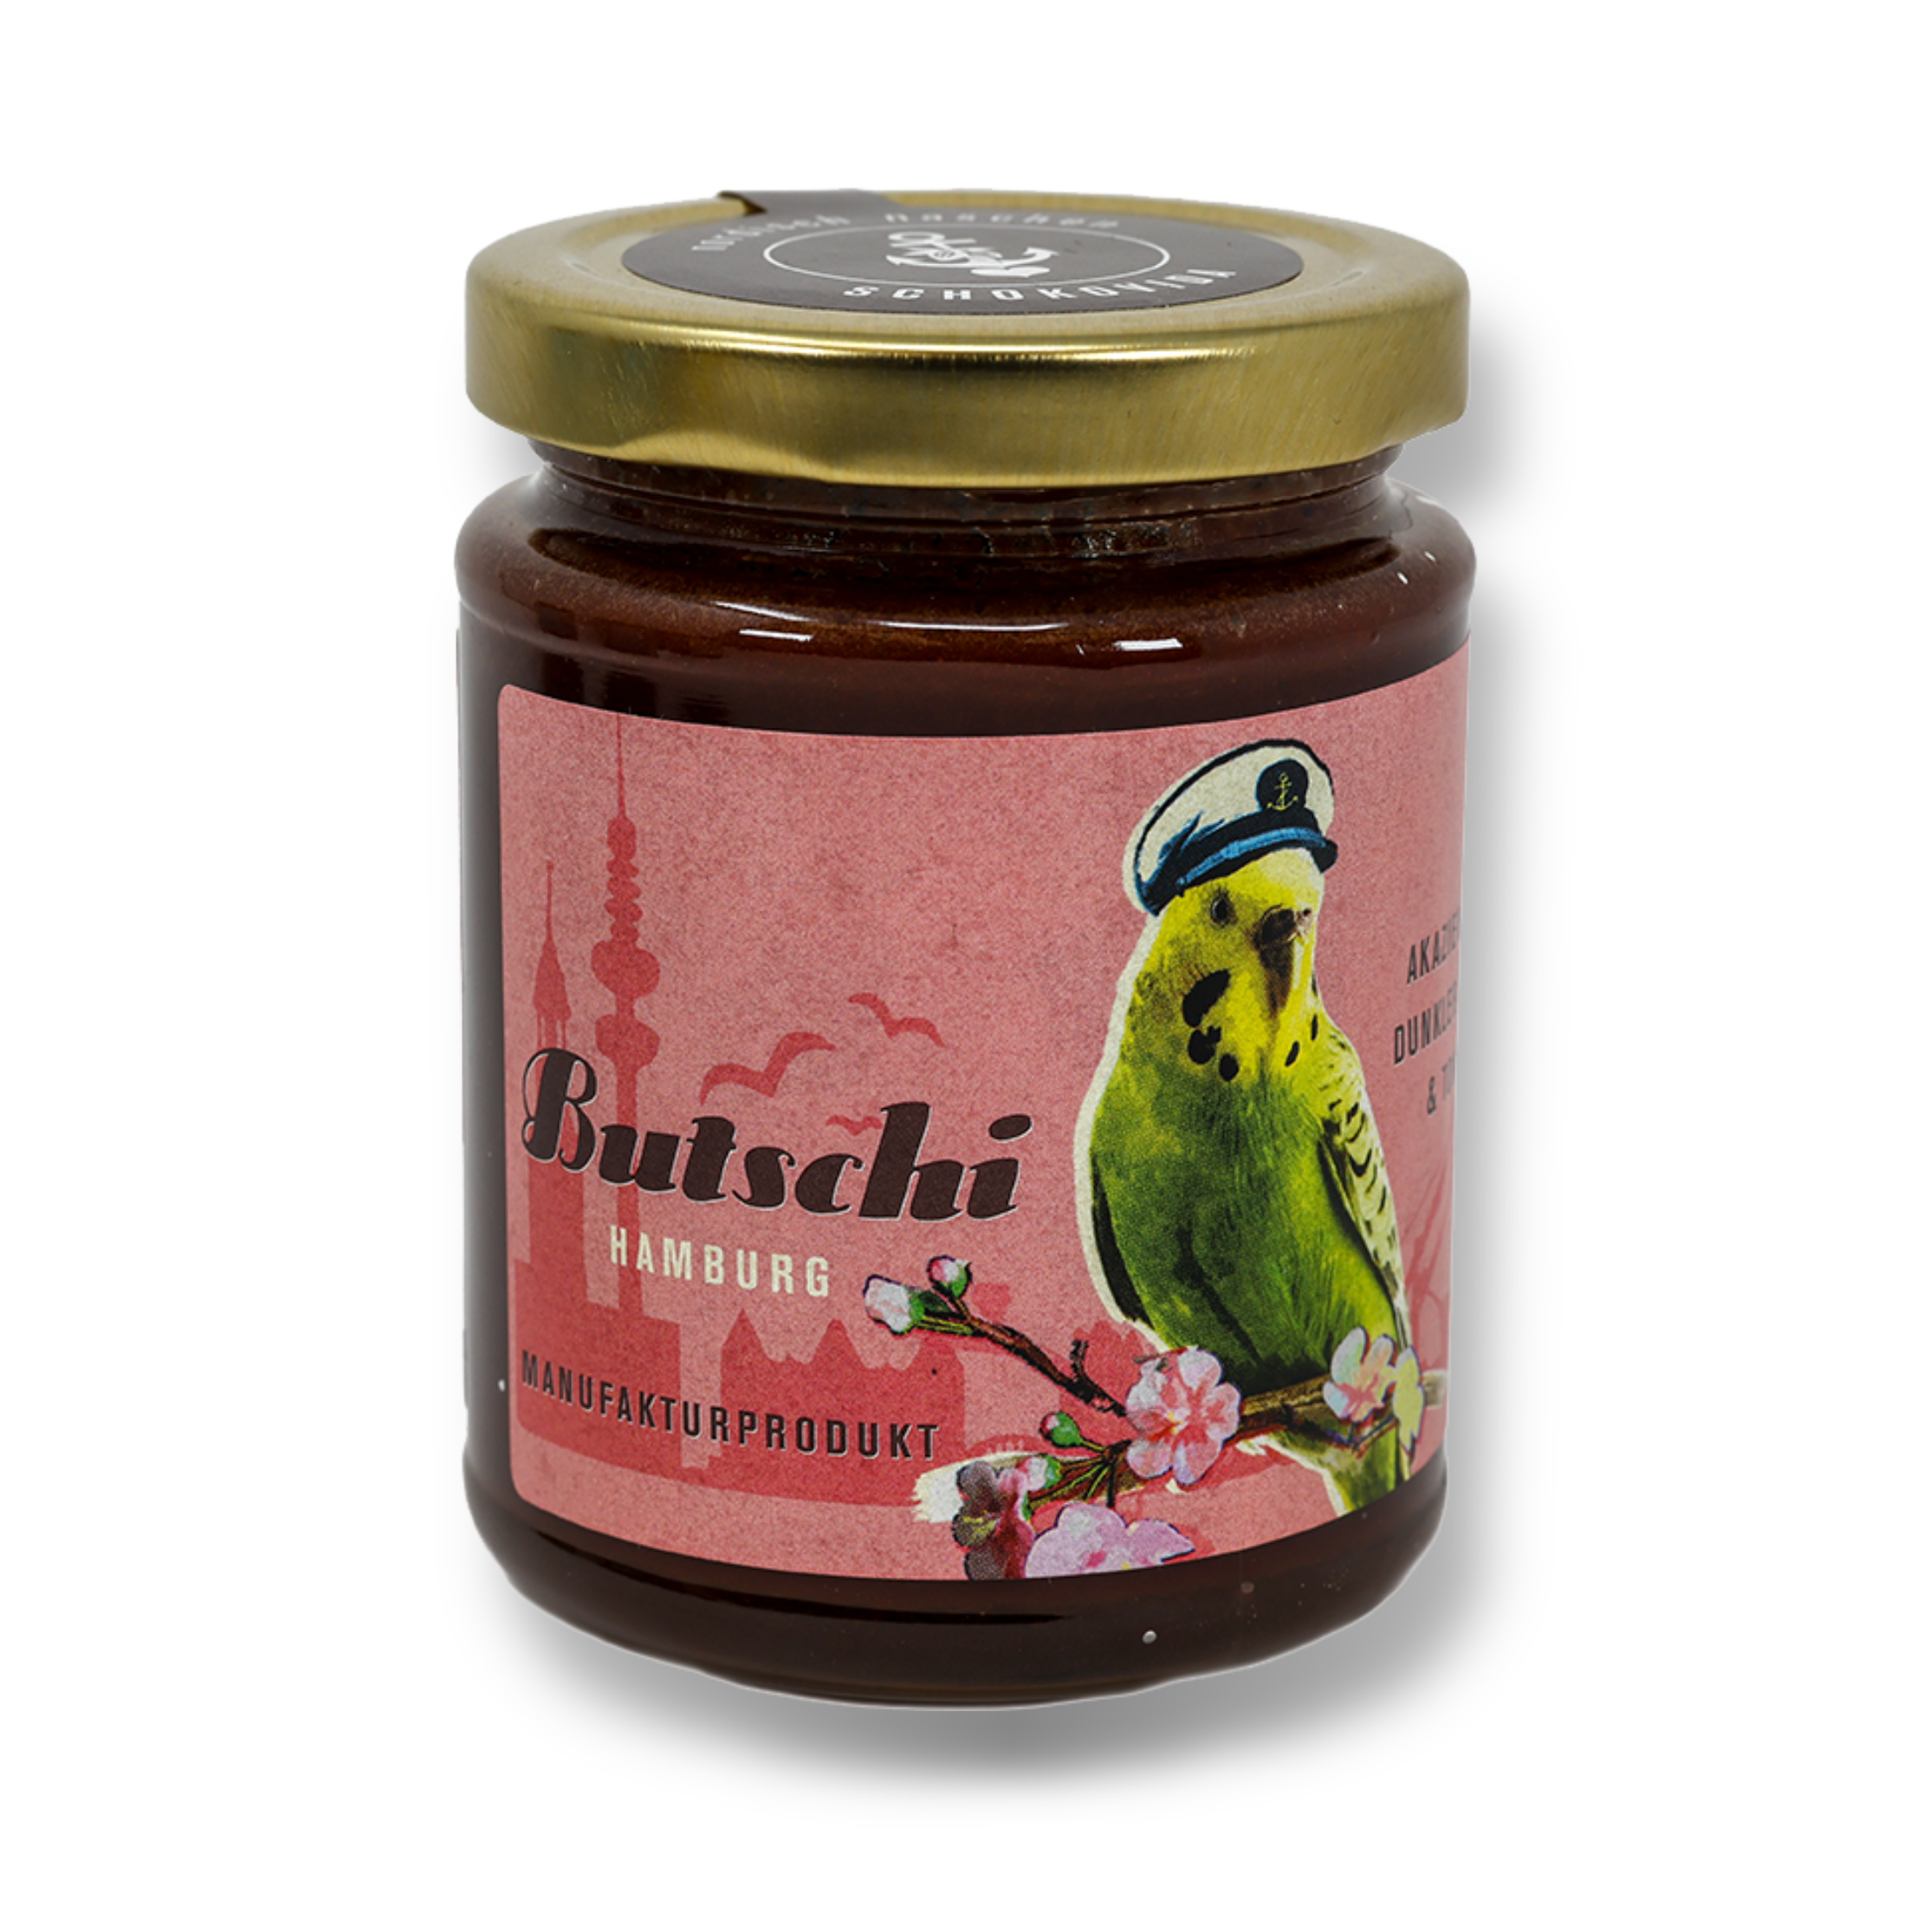 Butschi – Akazienhonig mit dunkler Schokolade und Tonkabohne, 275g